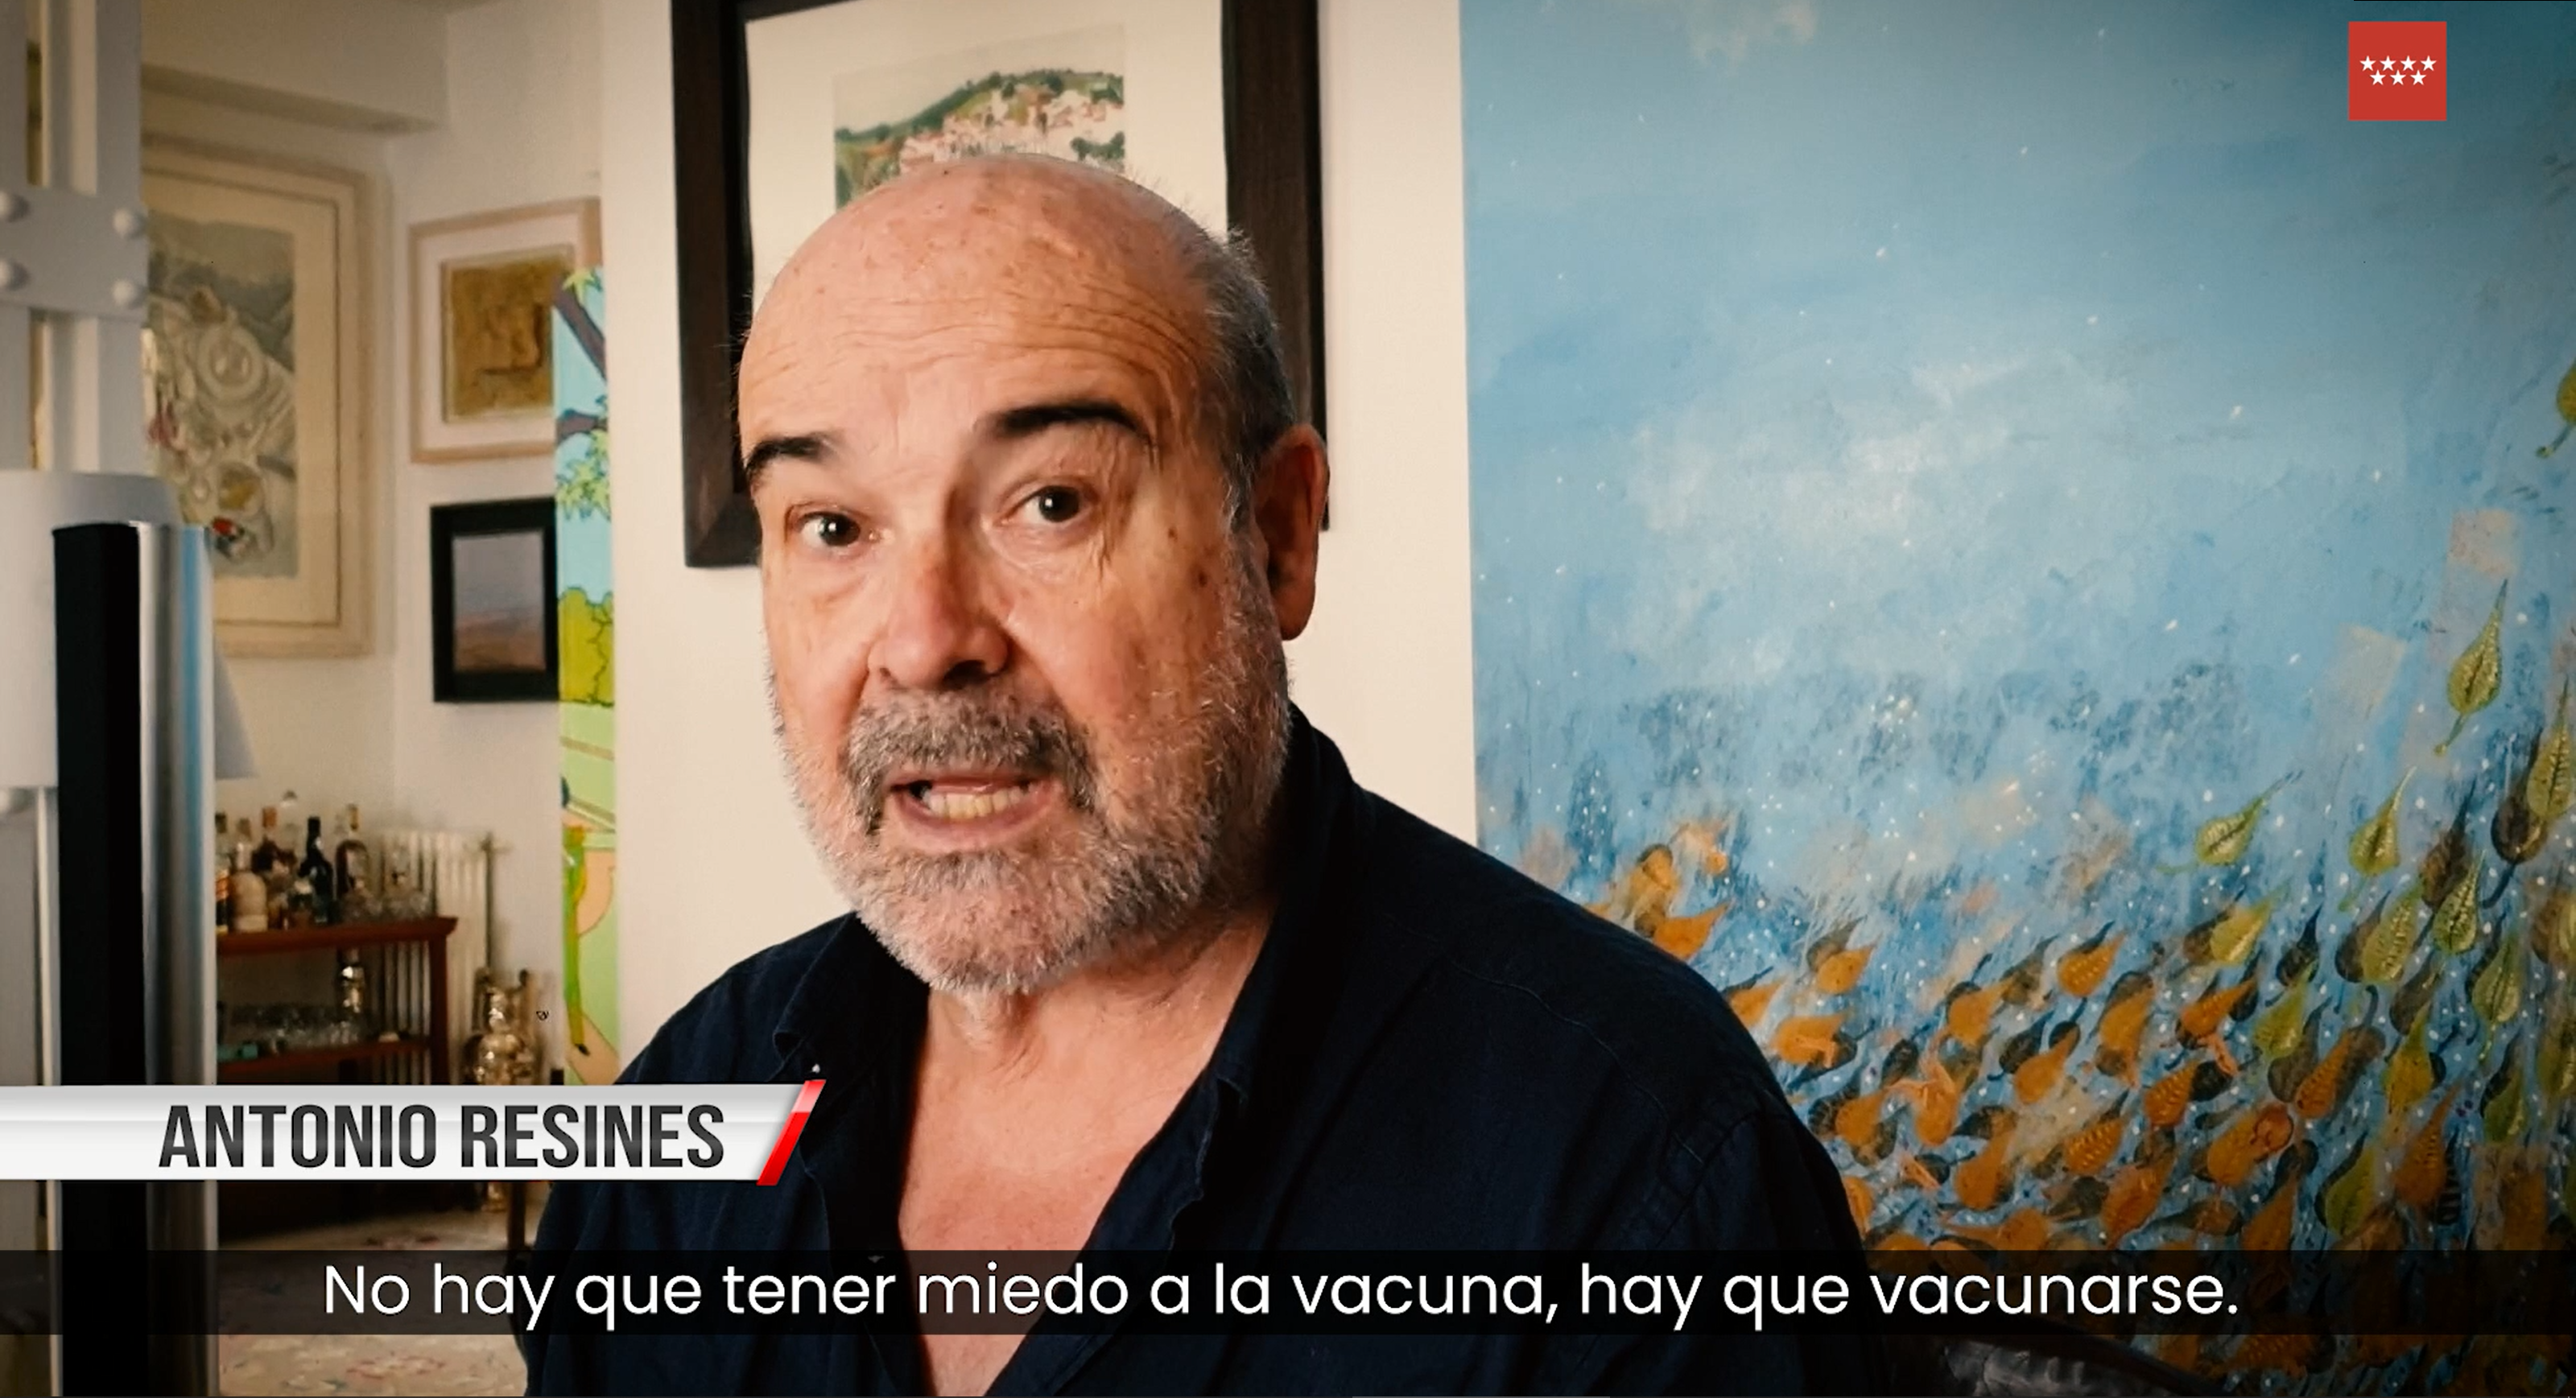 Resines, Butragueño, Belén Esteban... Estos son los famosos que participan  en la campaña de Madrid para animar a vacunarse